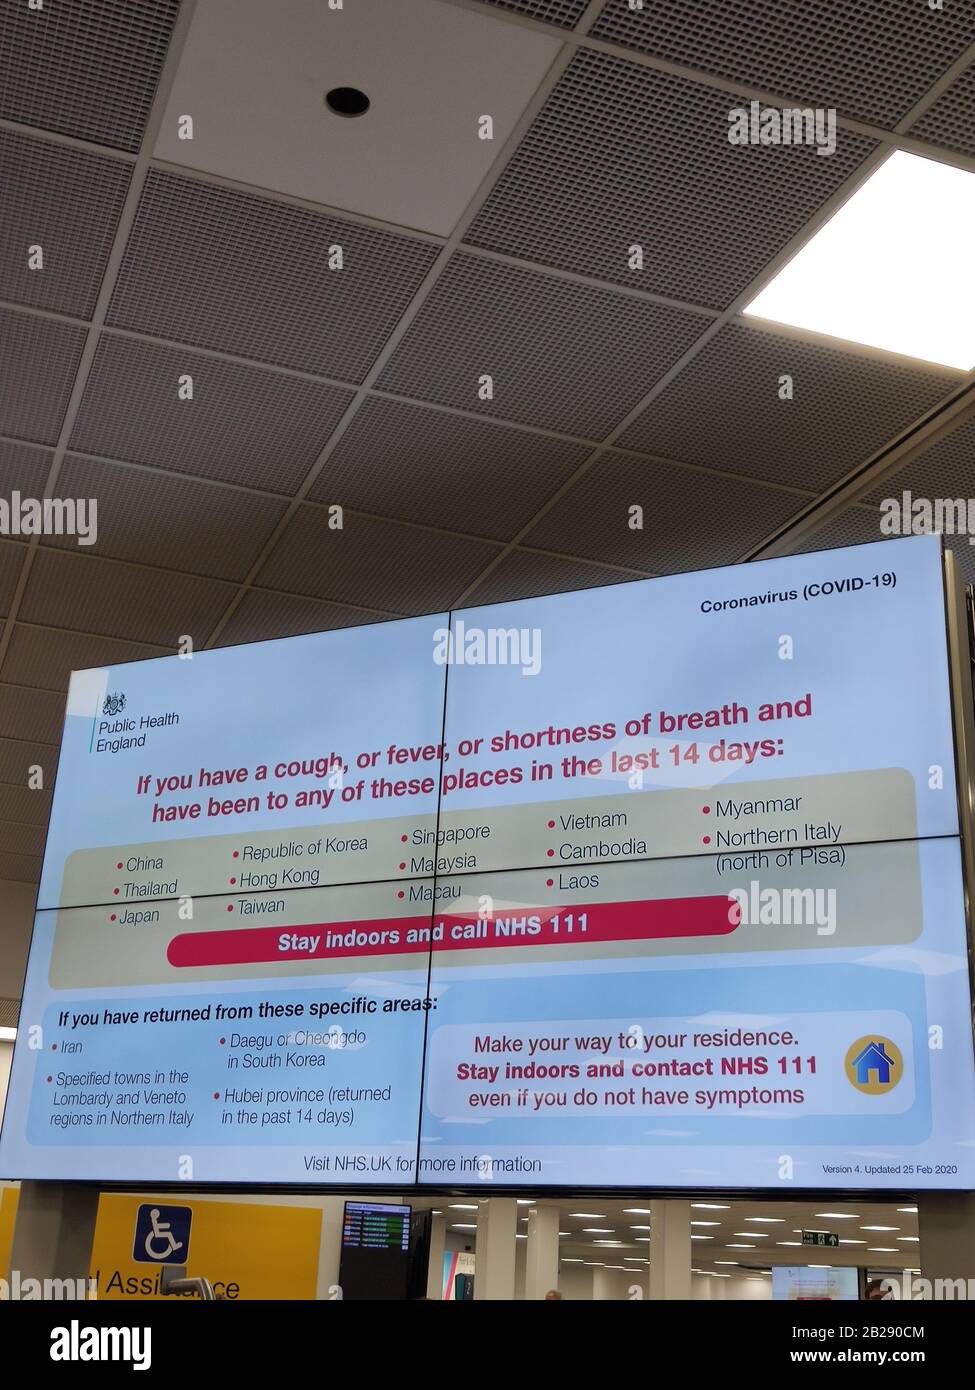 01/03/2020 - Aeroporto di Luton, Regno Unito - schermata di avvertimento/avviso Coronavirus nella sala degli arrivi. Foto Stock